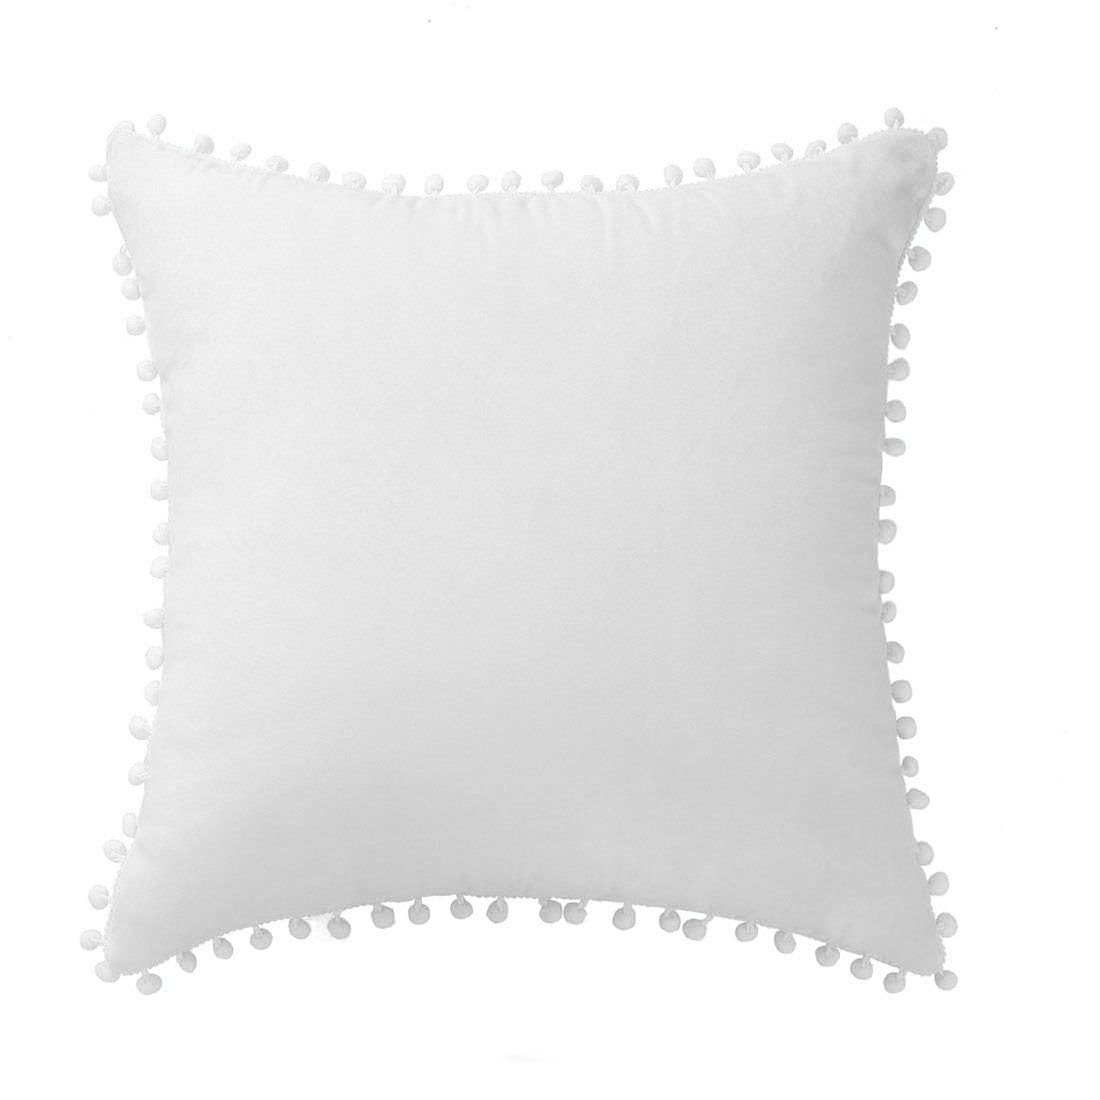 white throw pillow covers 20x20